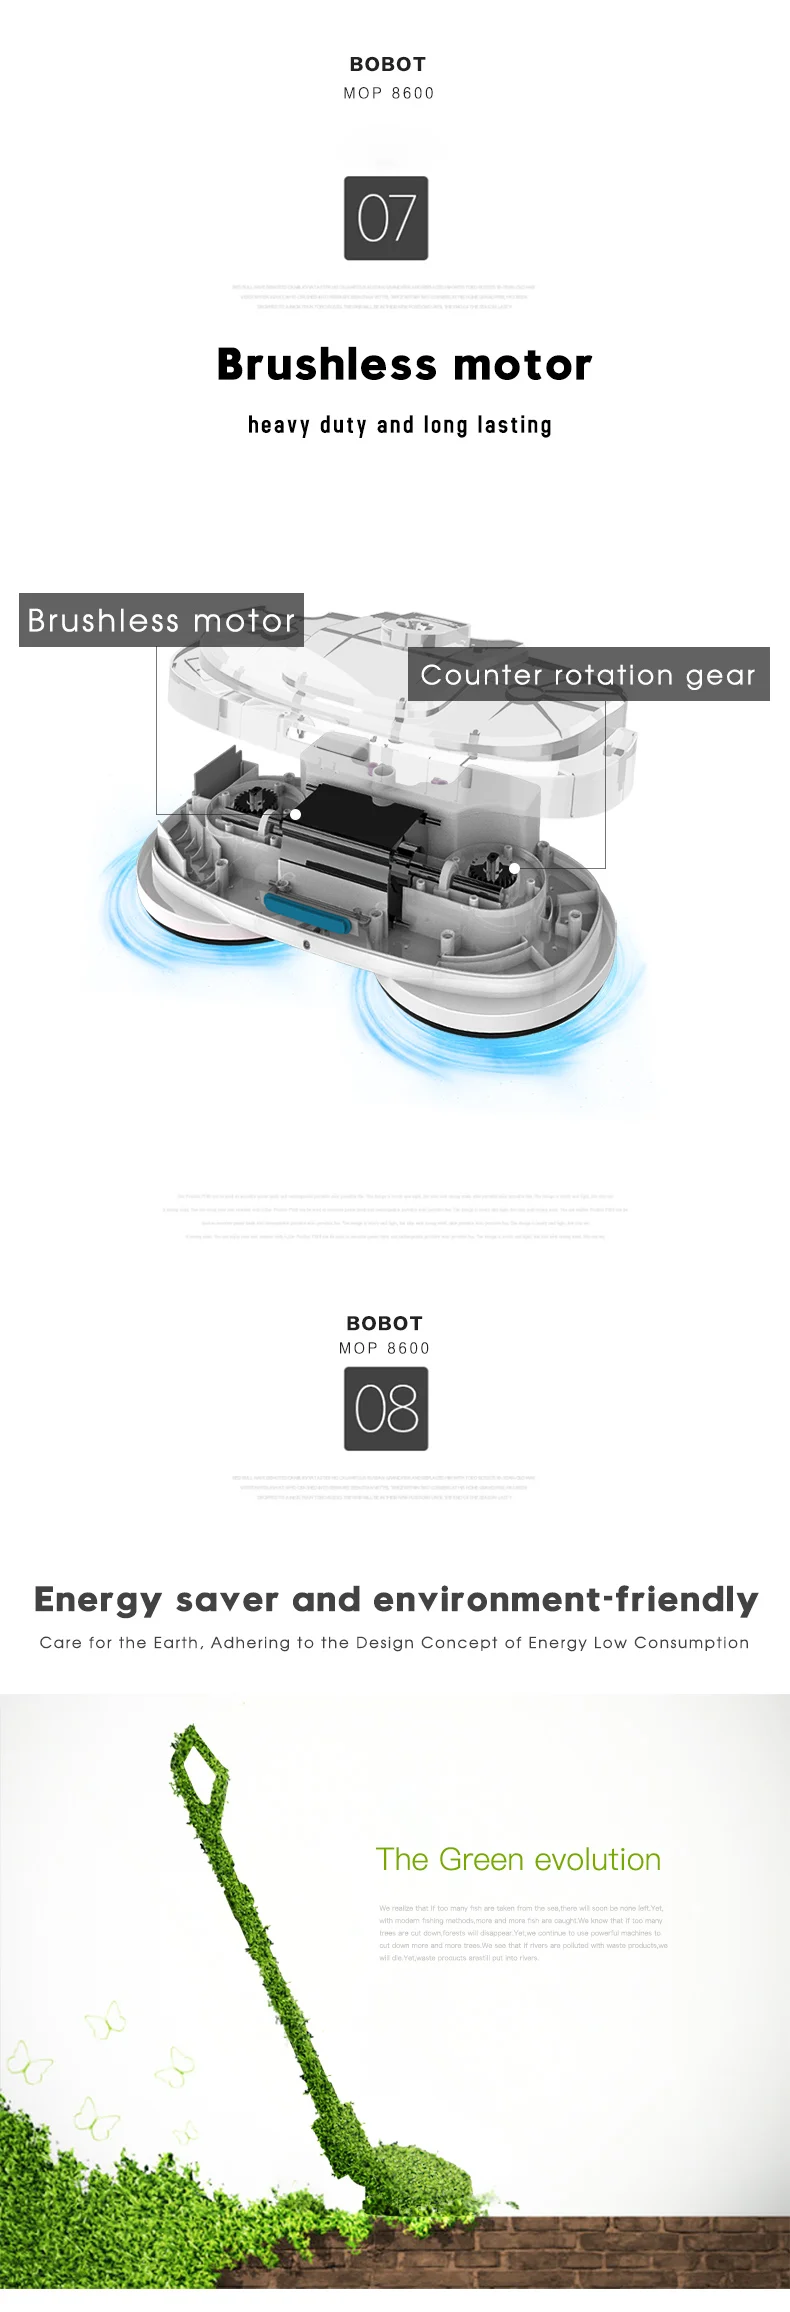 Электрическая Швабра Xiaomi Bobot Mop 8600s Отзывы